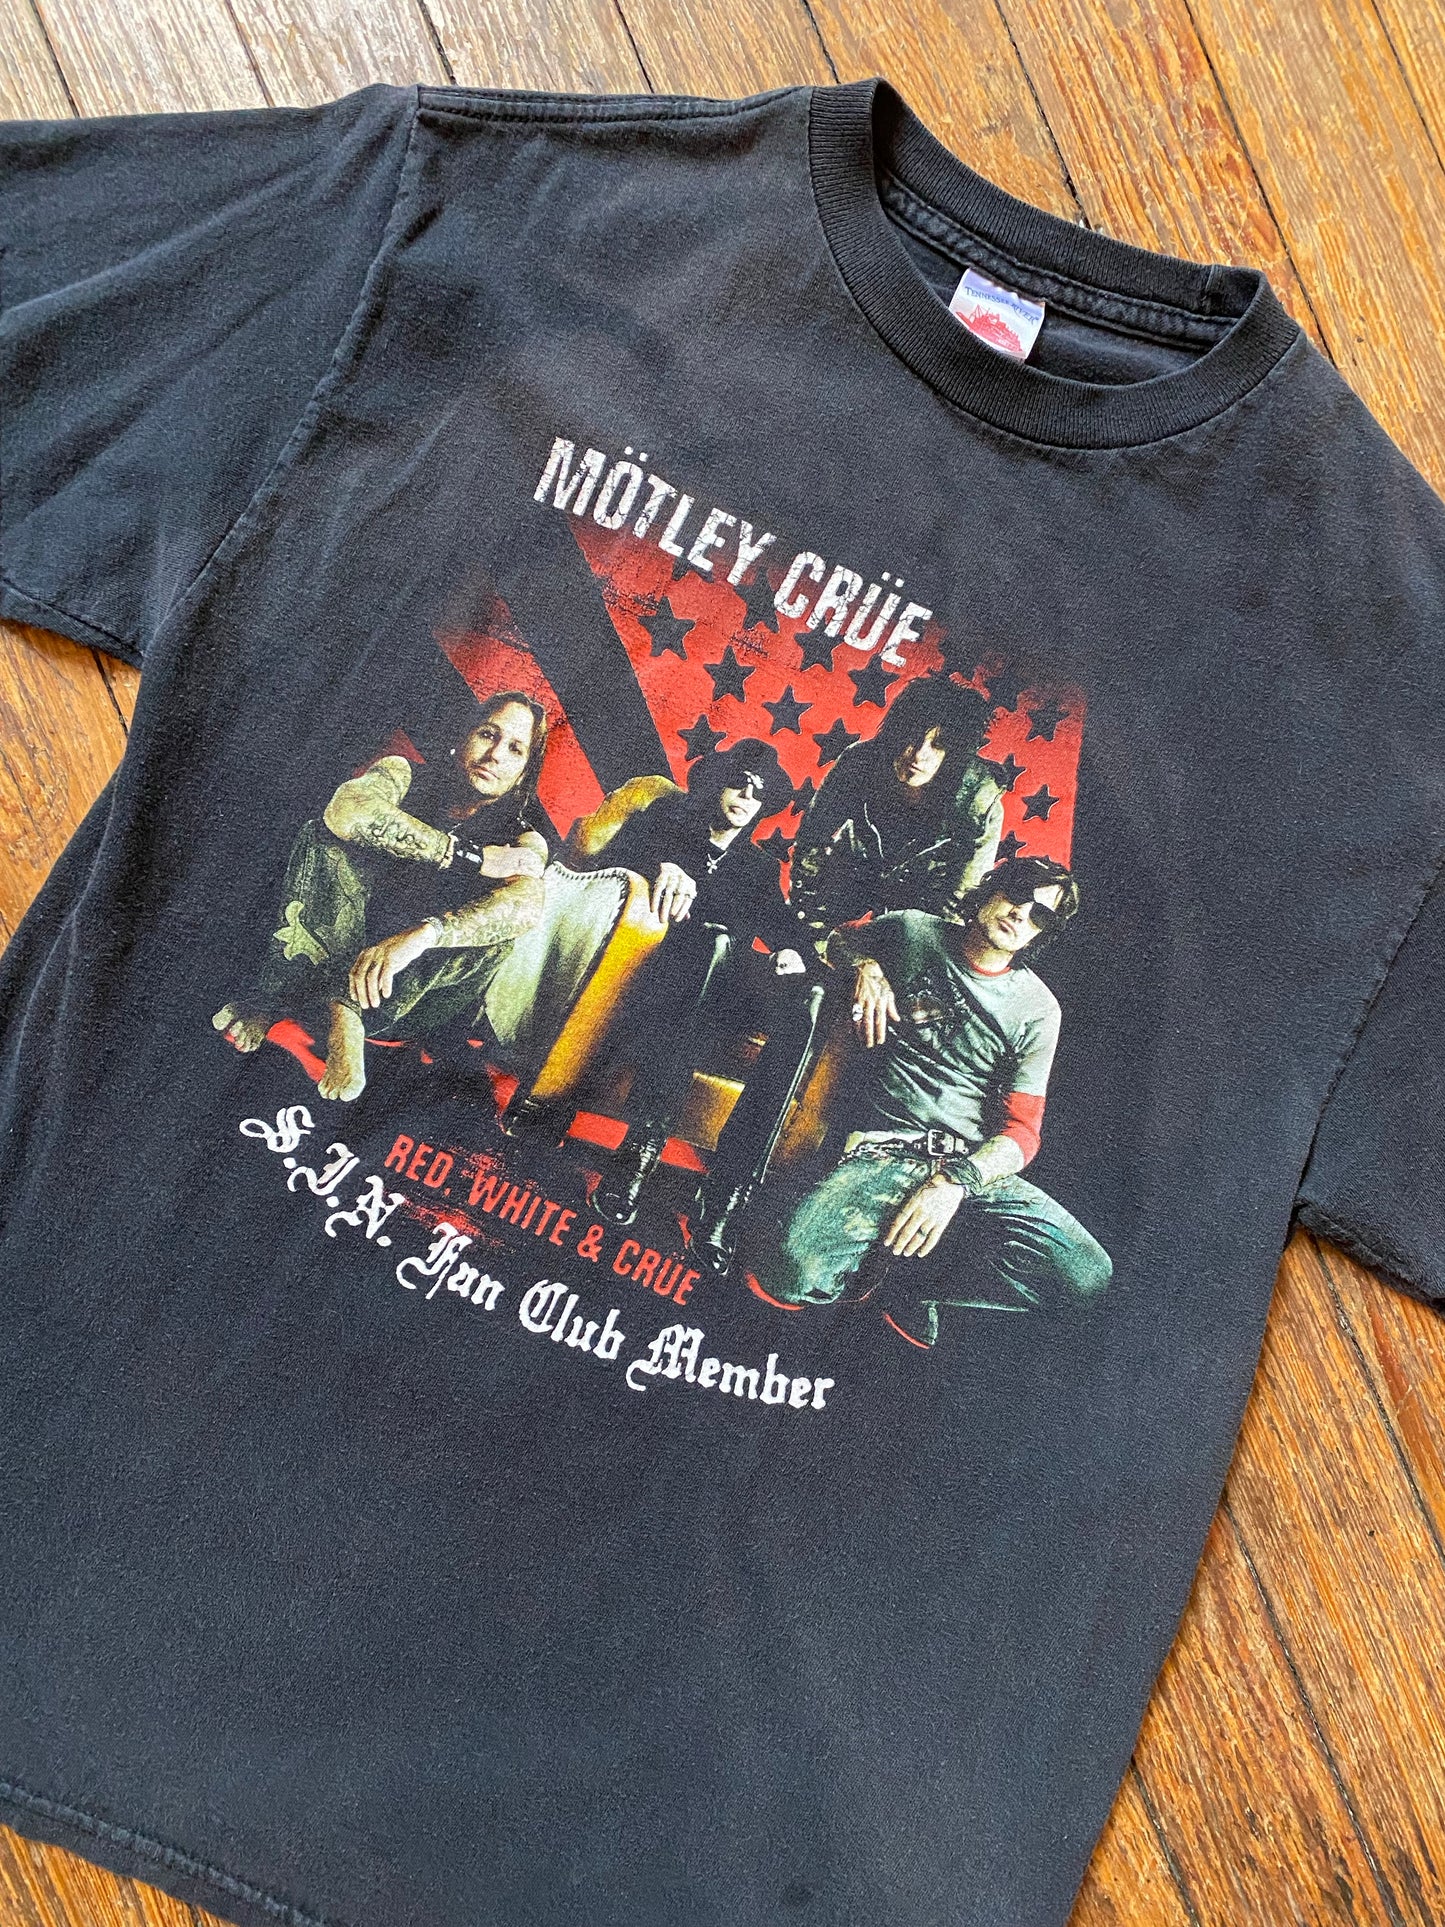 2005 Motley Crüe Red, White & Crüe T-shirt